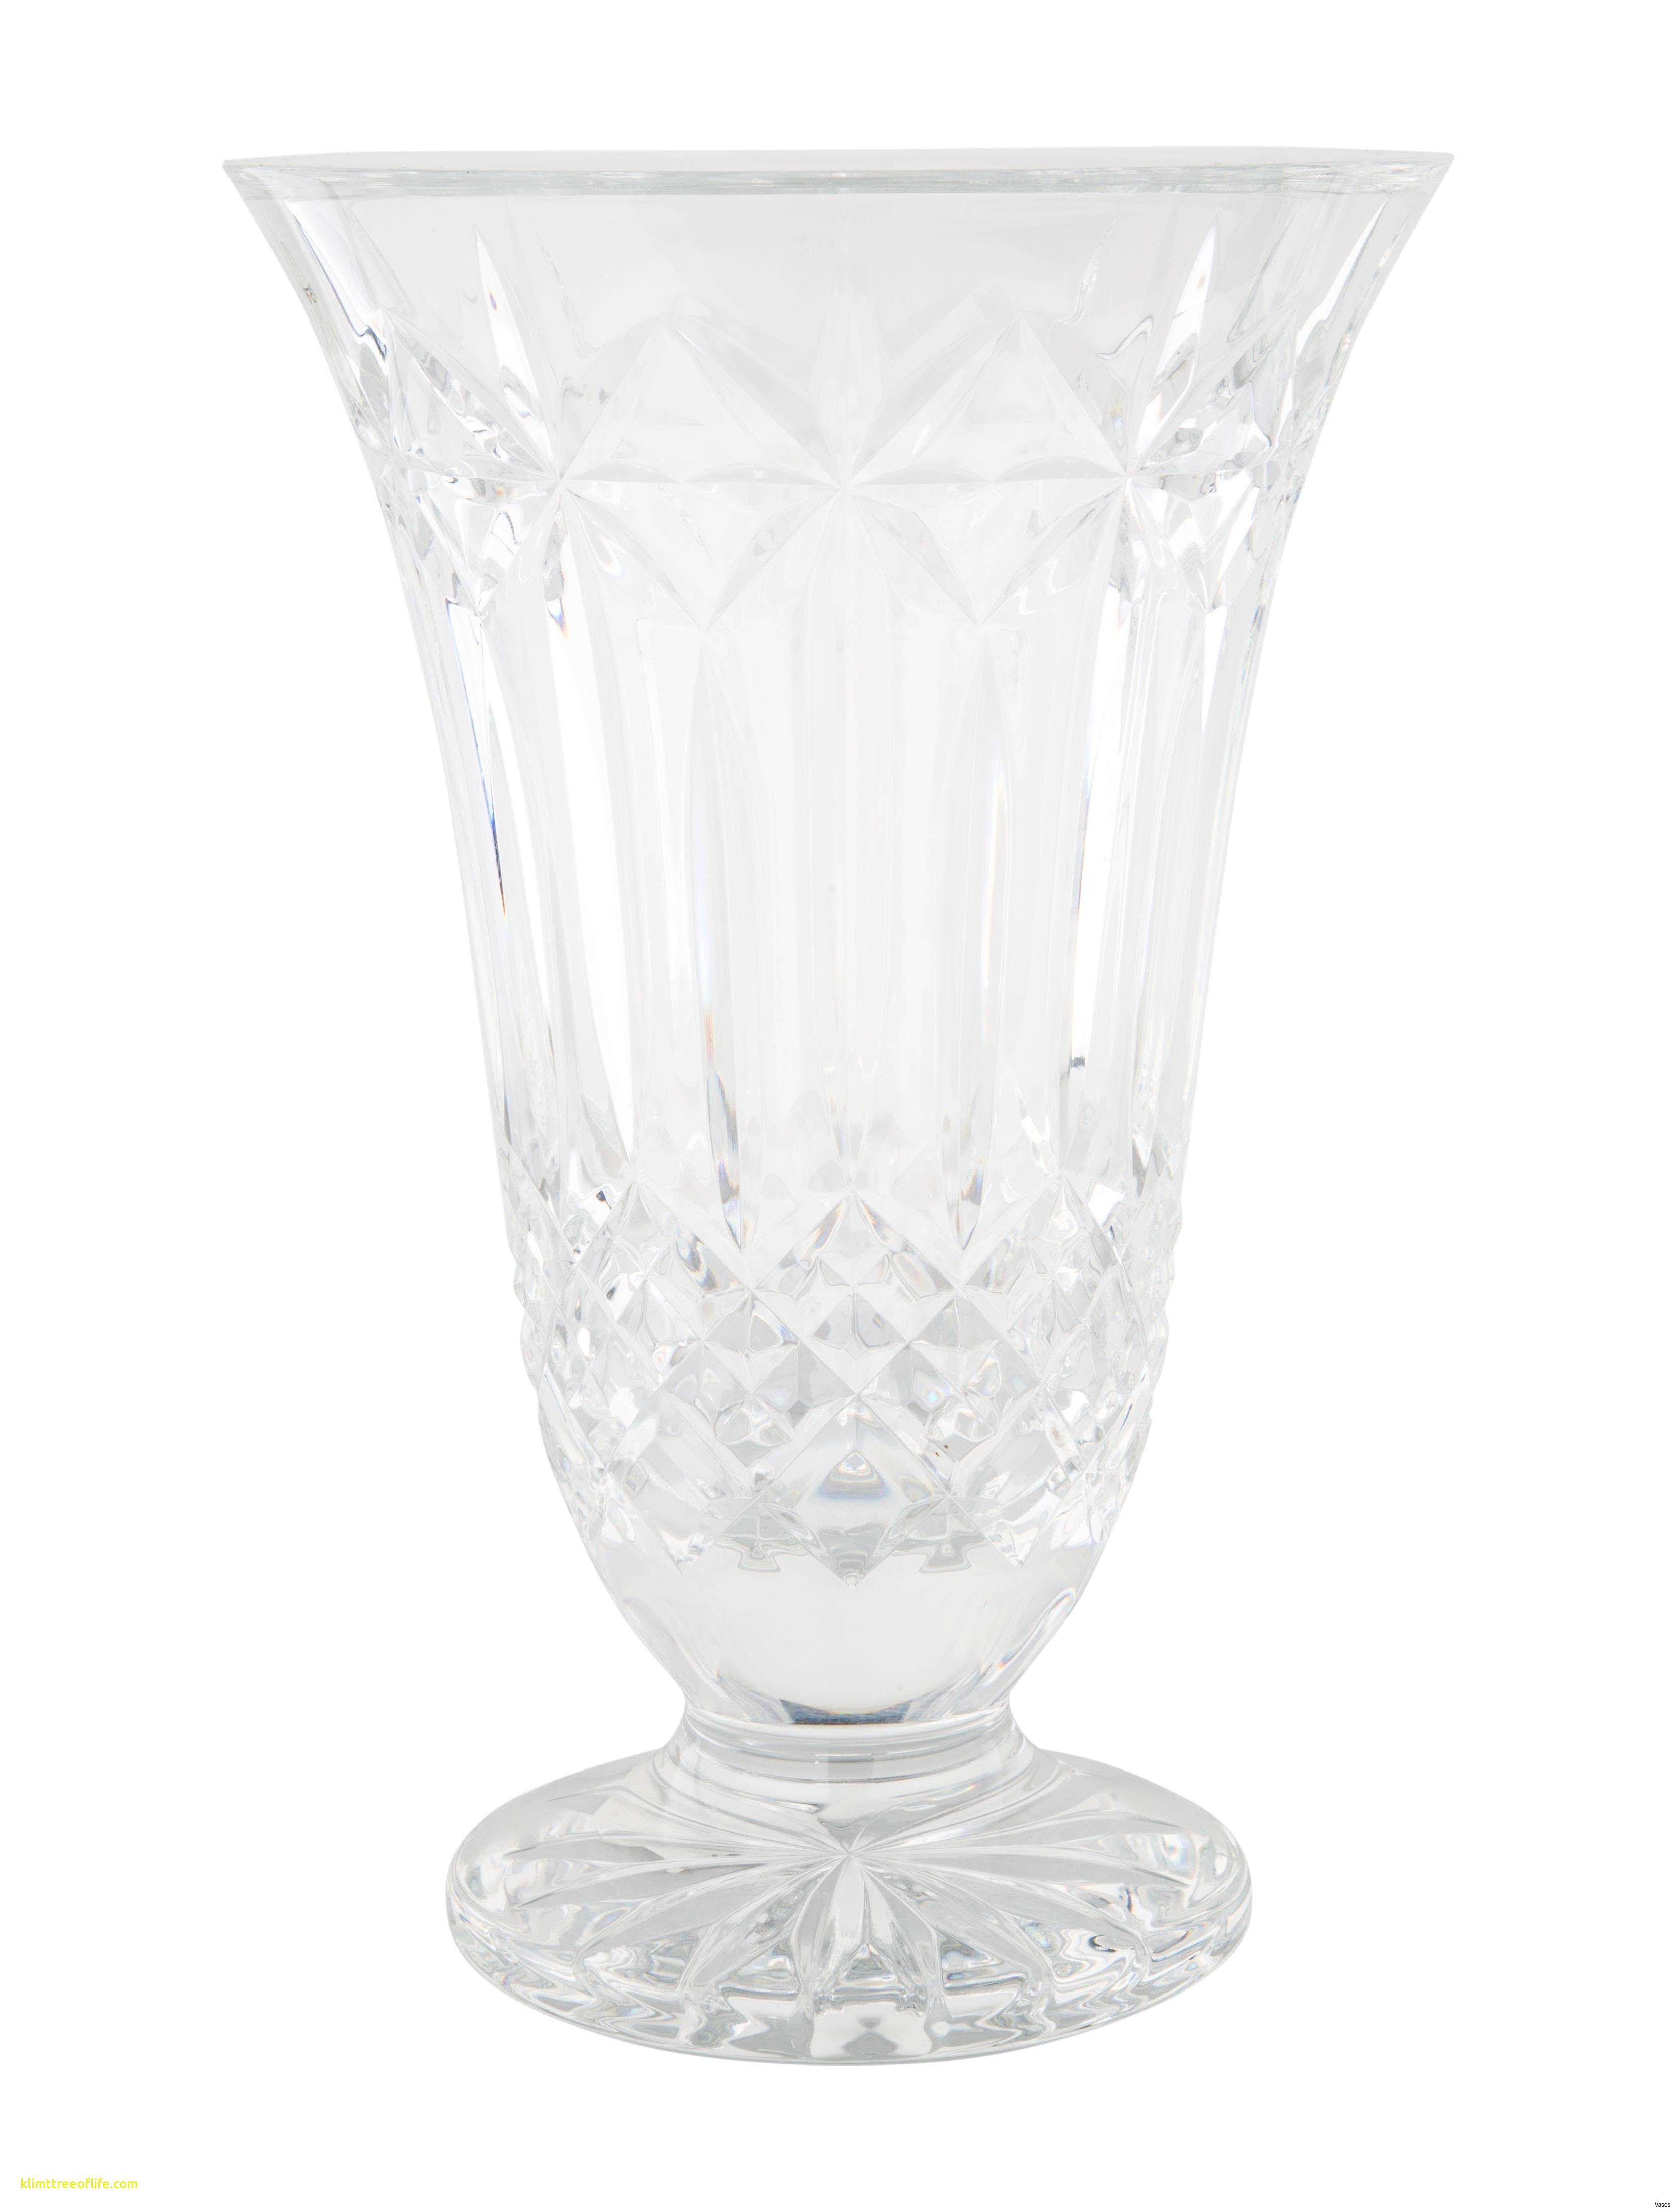 lenox crystal flower vase of 20 inspirational tall white vase bogekompresorturkiye com intended for full size of living room red vases new tall red vaseh vases vase vasei 0d